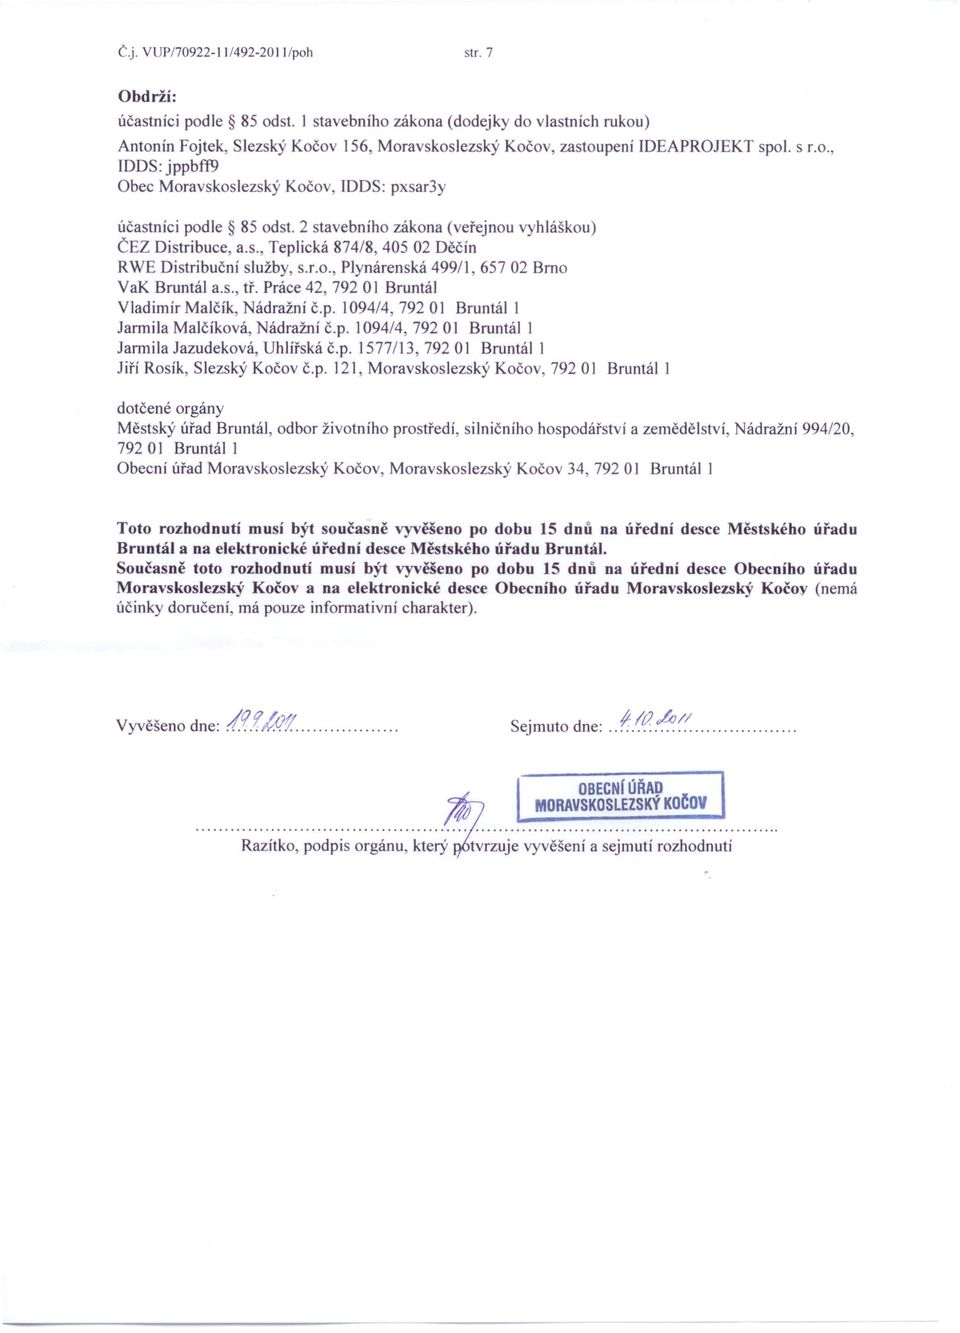 2 stavebního zákona (veřejnou vyhláškou) ČEZ Distribuce, a.s., Teplická 874/8,405 02 Děčín RWE Distribuční služby, s.r.o., Plynárenská 499/1,65702 Brno VaK Bruntál a.s., tř.